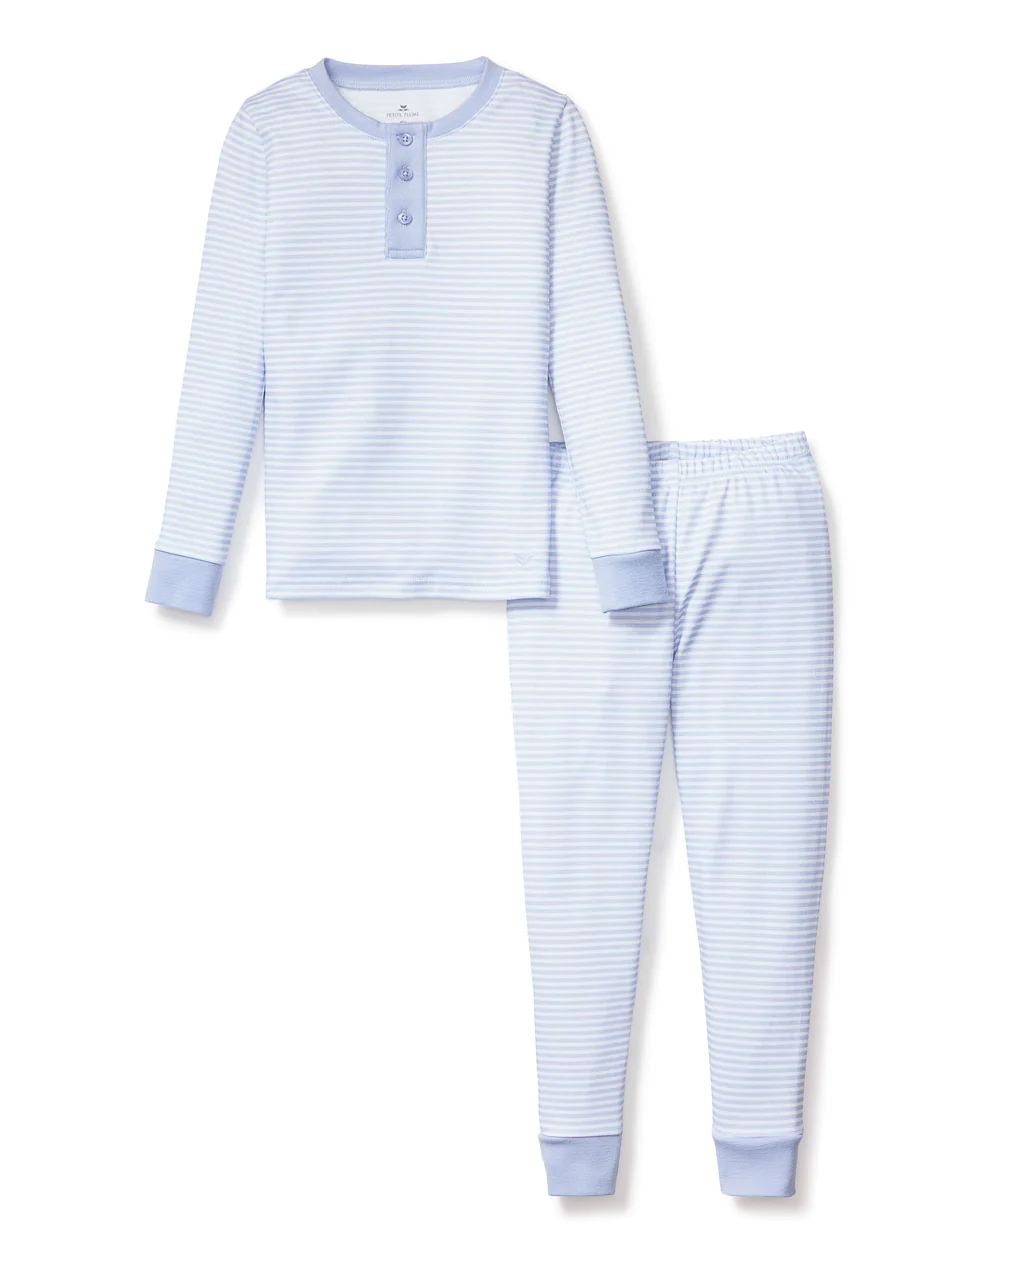 Kid's Pima Snug Fit Pajama Set in Blue Stripes | Petite Plume